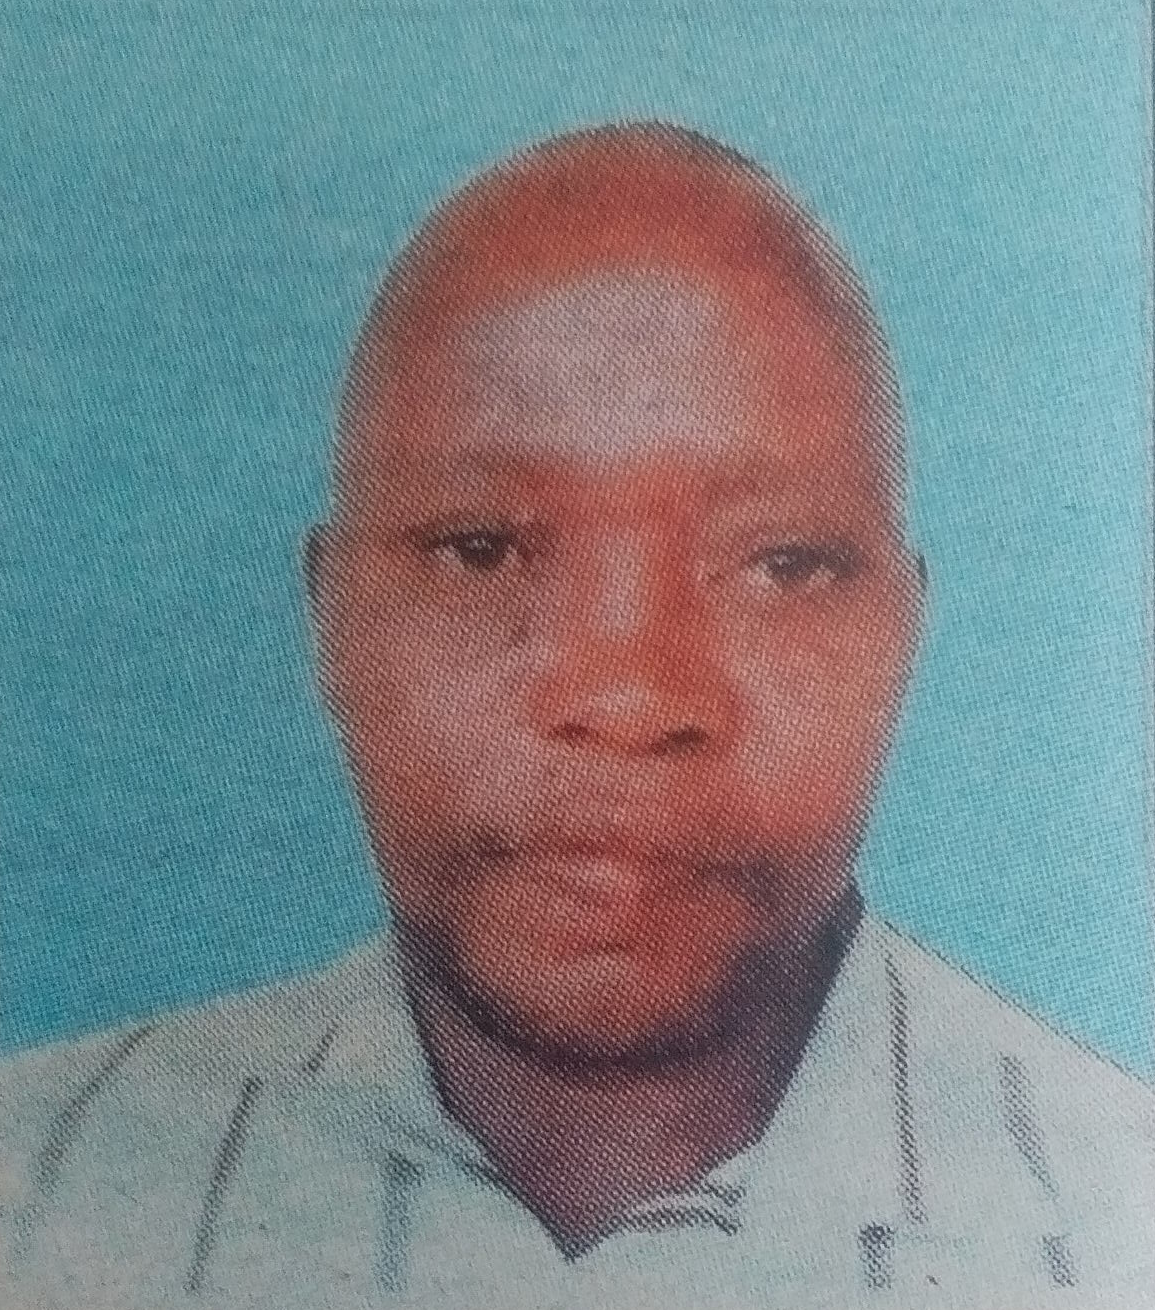 Obituary Image of Peter Njoroge Ngigi